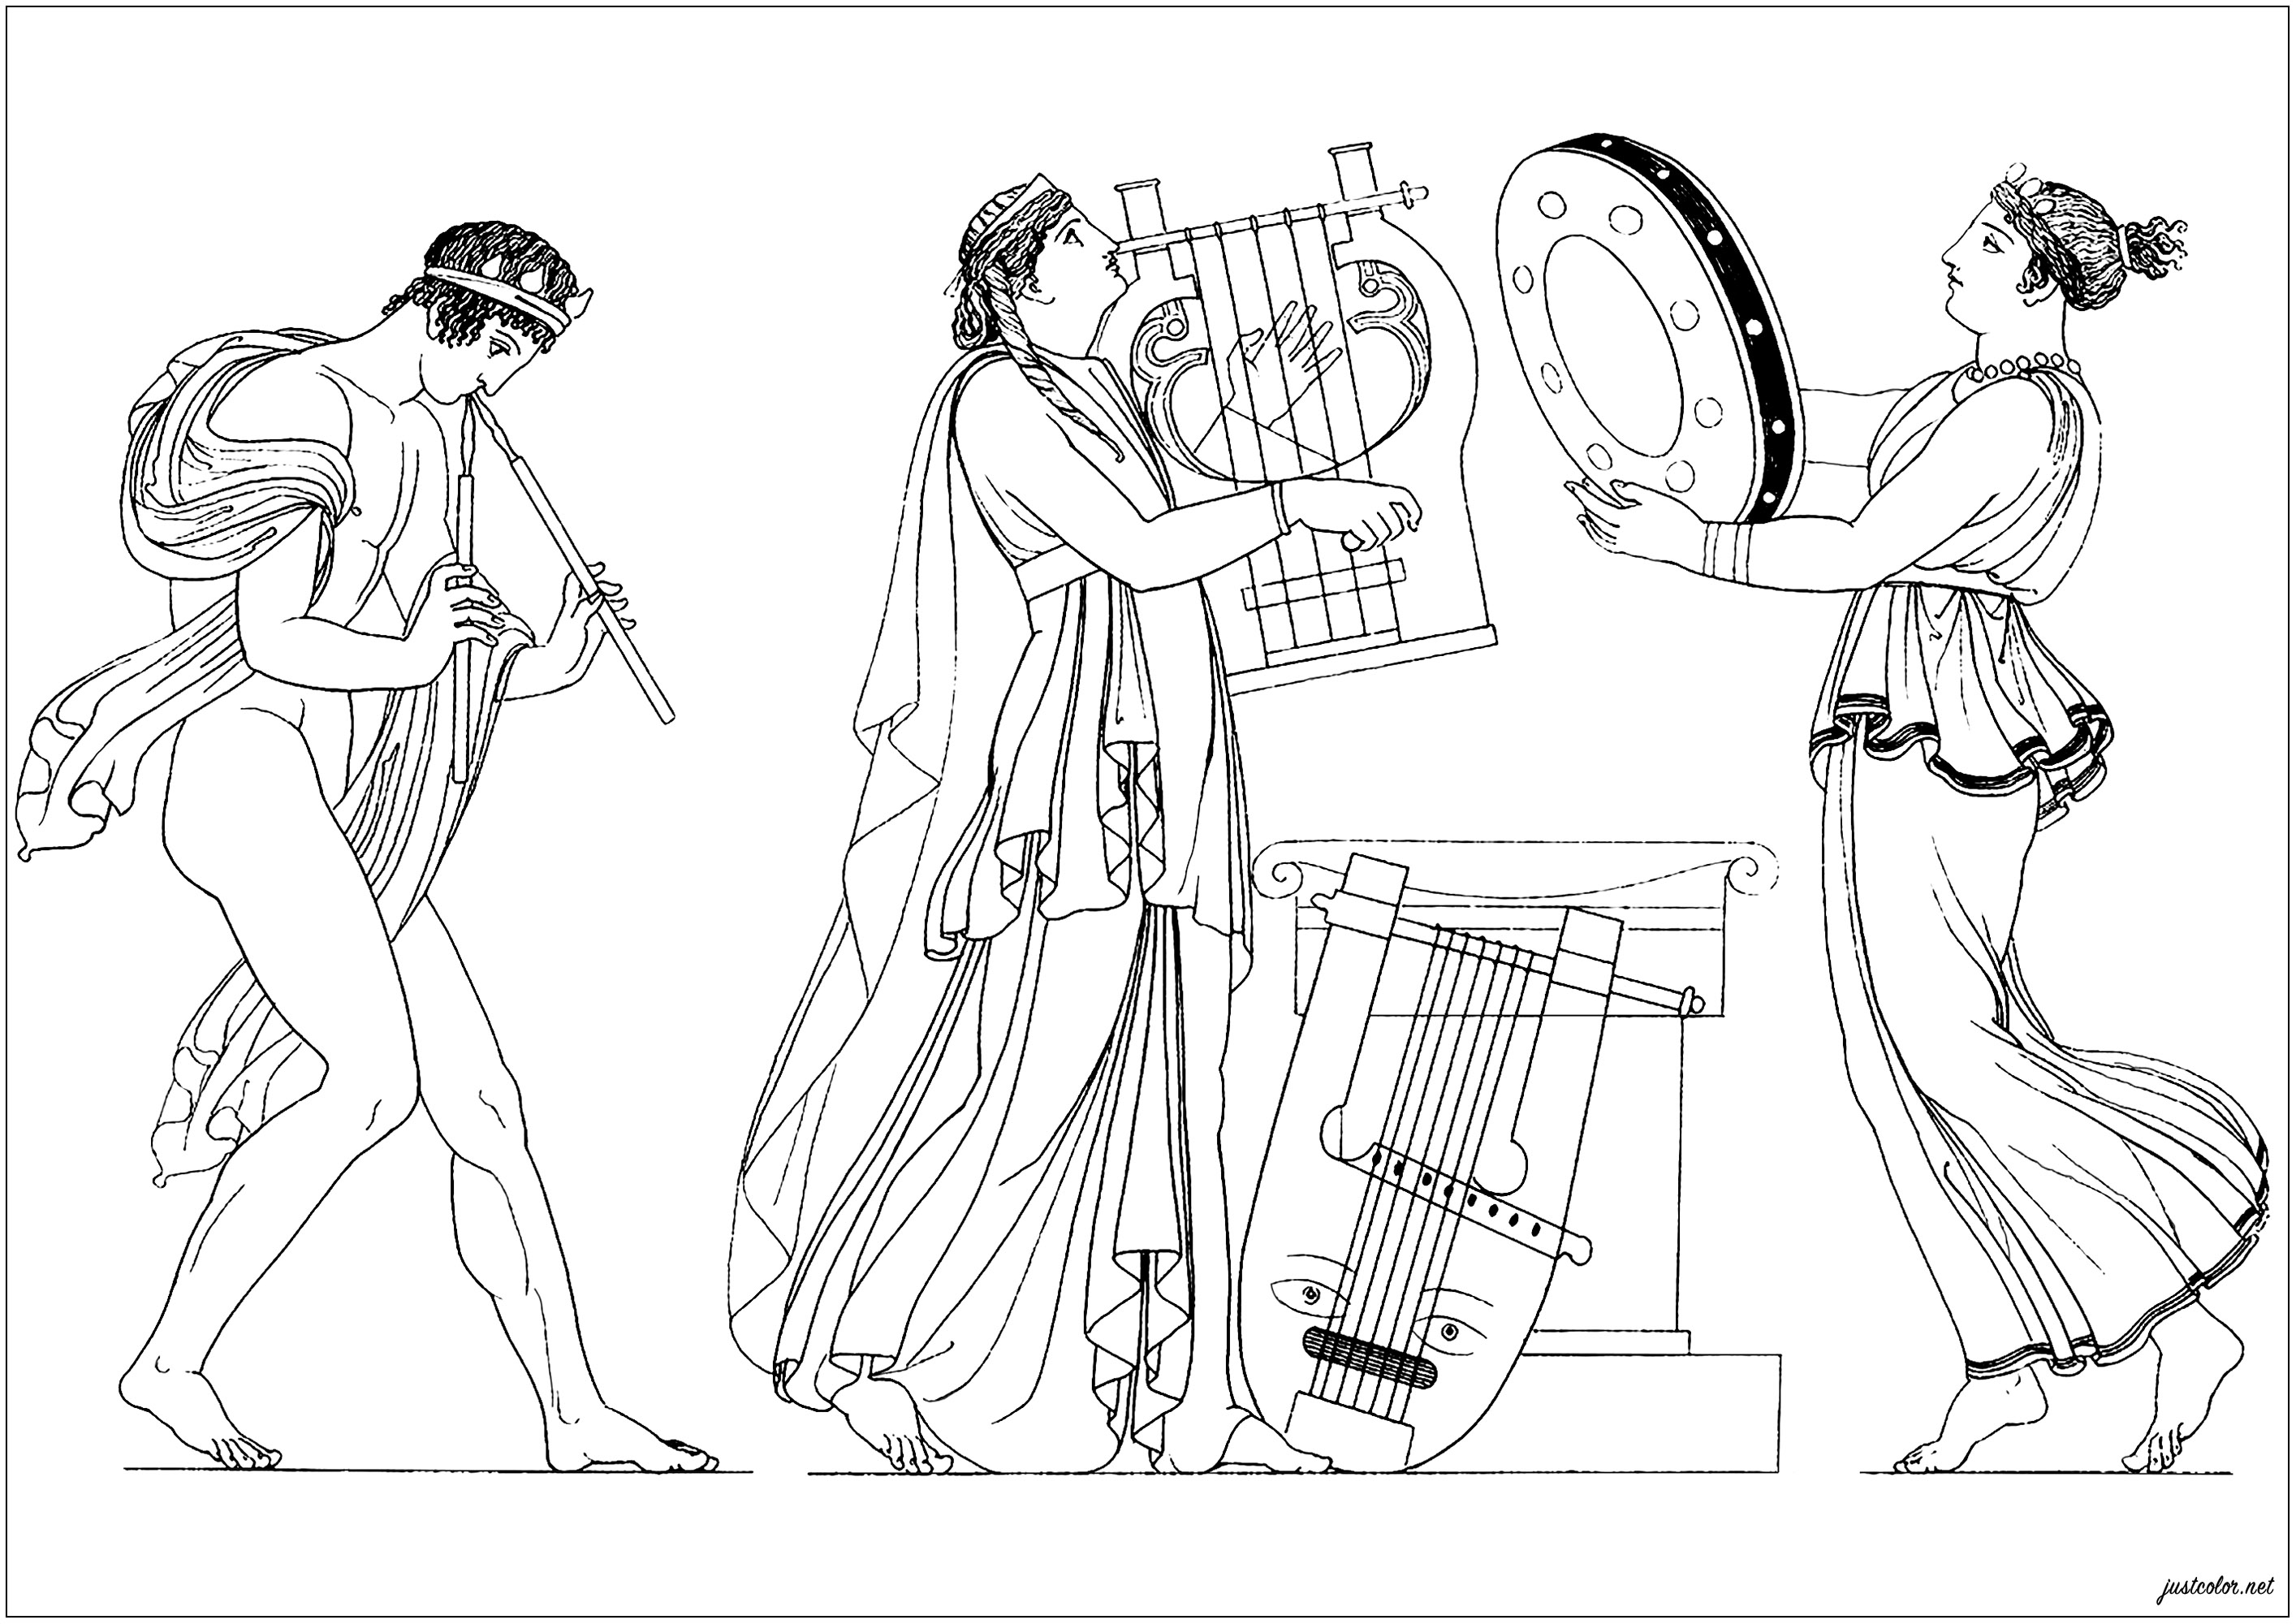 Musicisti greci antichi. Pagina da colorare basata su un'illustrazione tratta da 'The Egyptian, Grecian and Roman costumes' di Thomas Baxter (1782-1821)